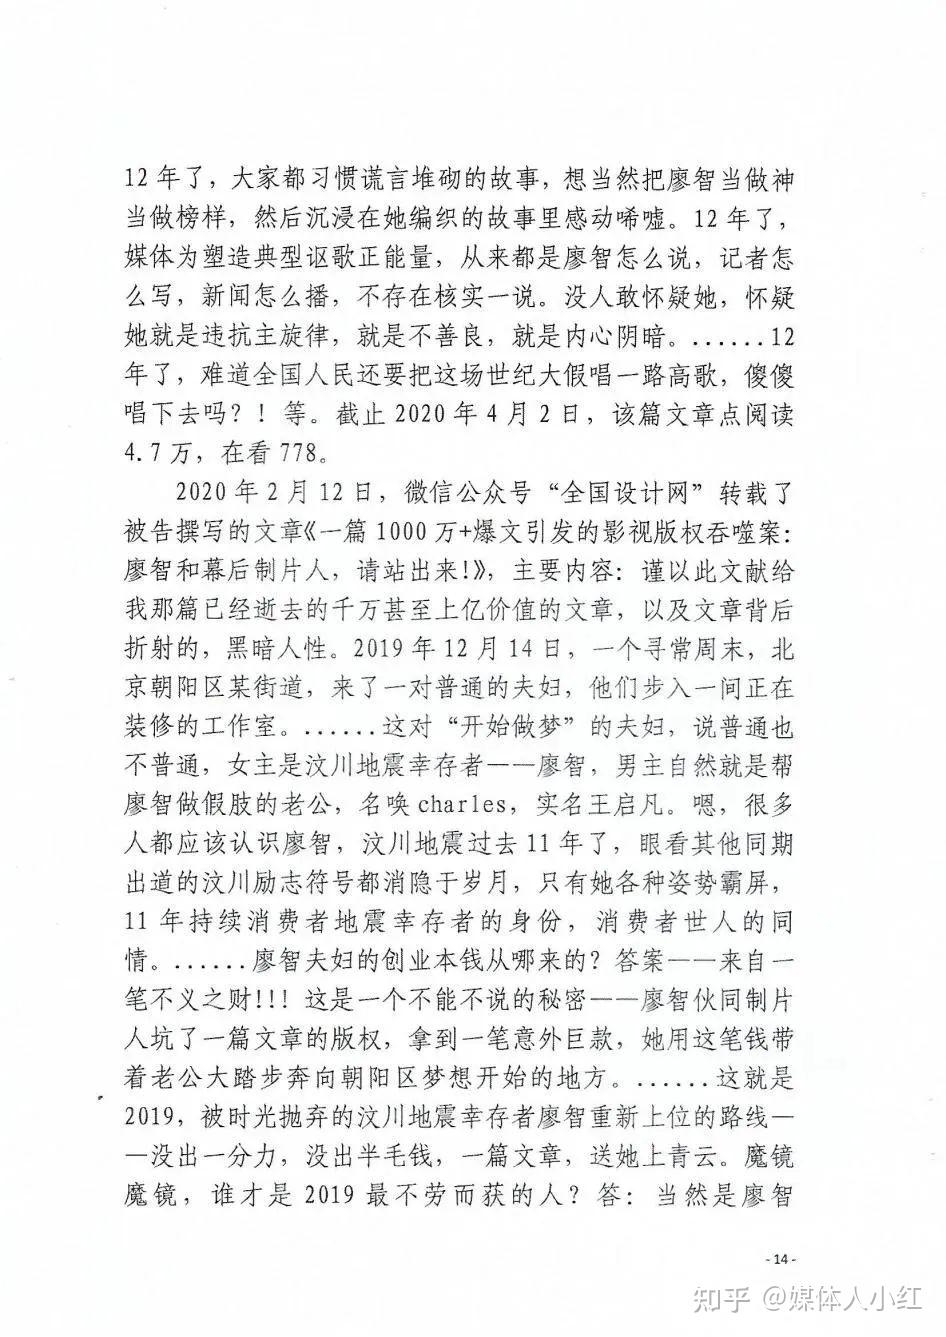 法官造假是怎么造出一份判决书的请看重庆渝北区法院真实案例